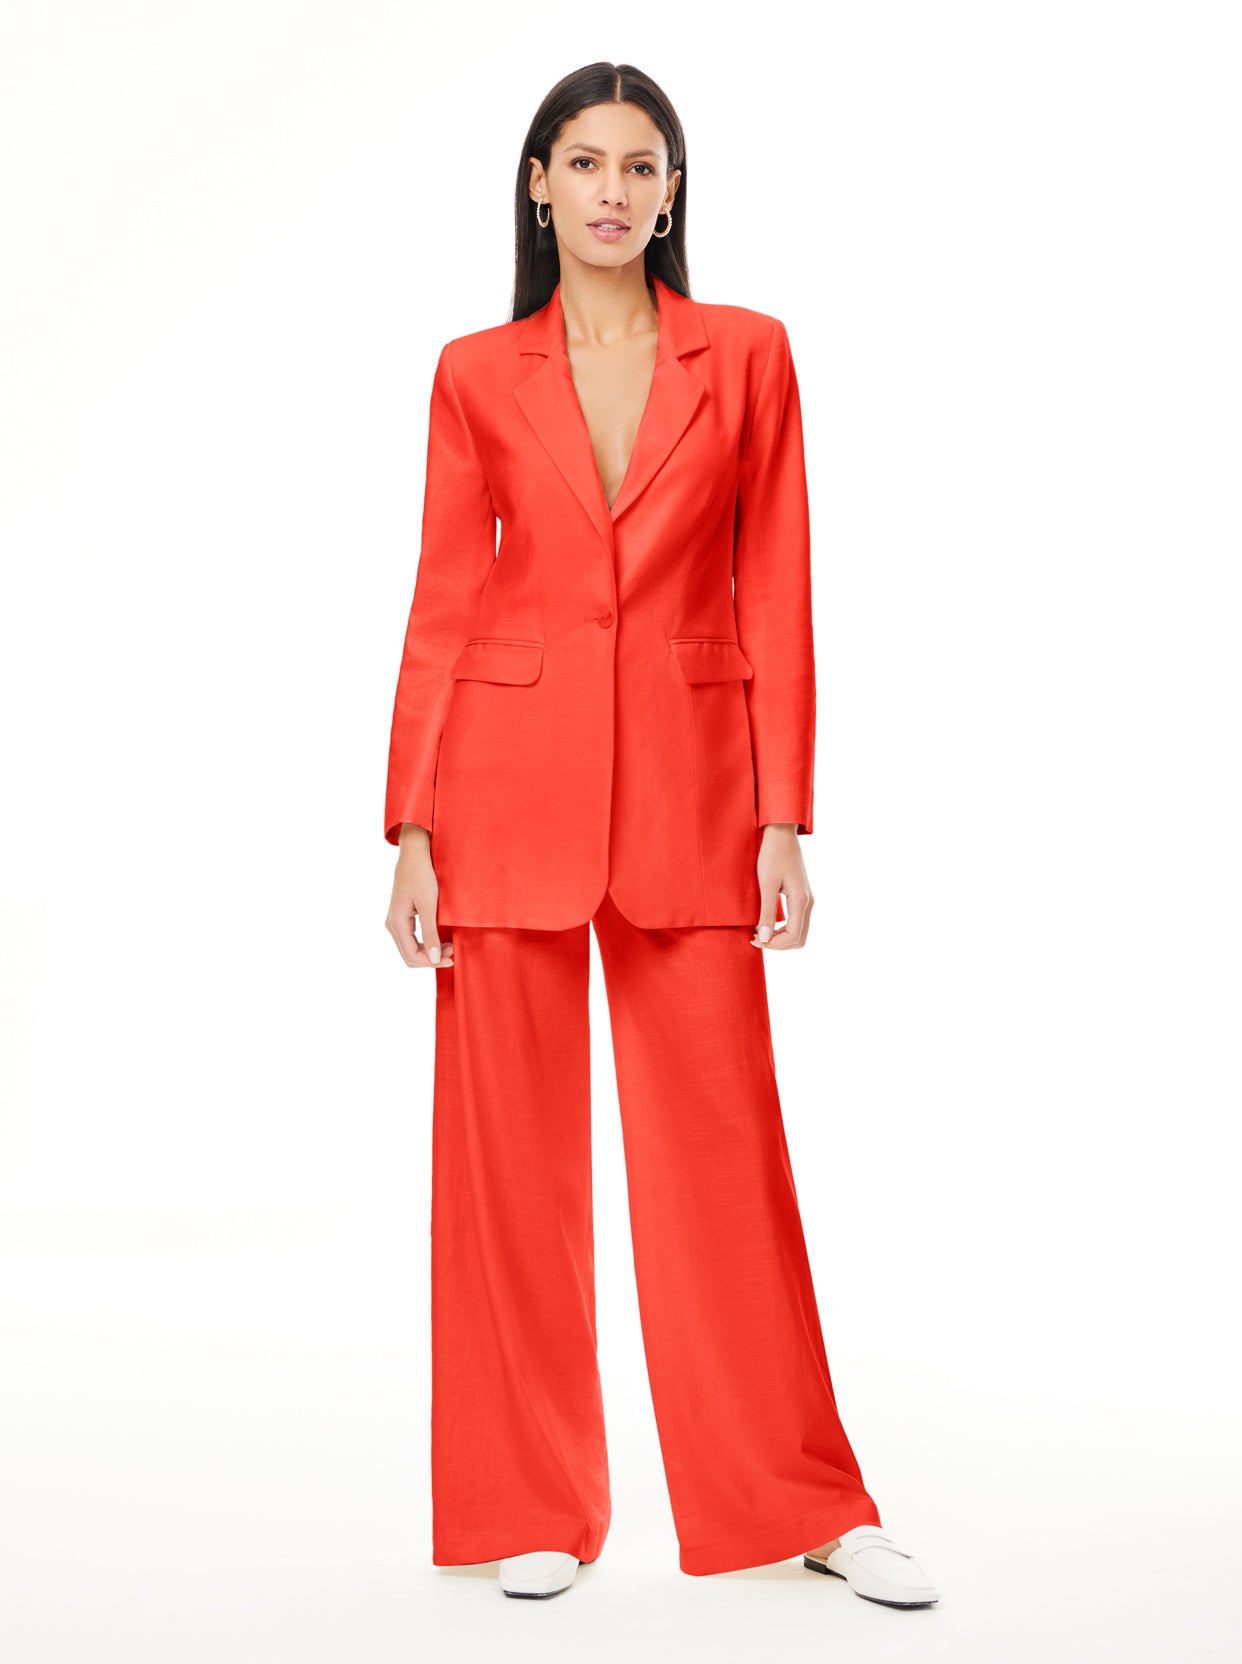 Linen Suit For Woman  Beige Linen Suit Women